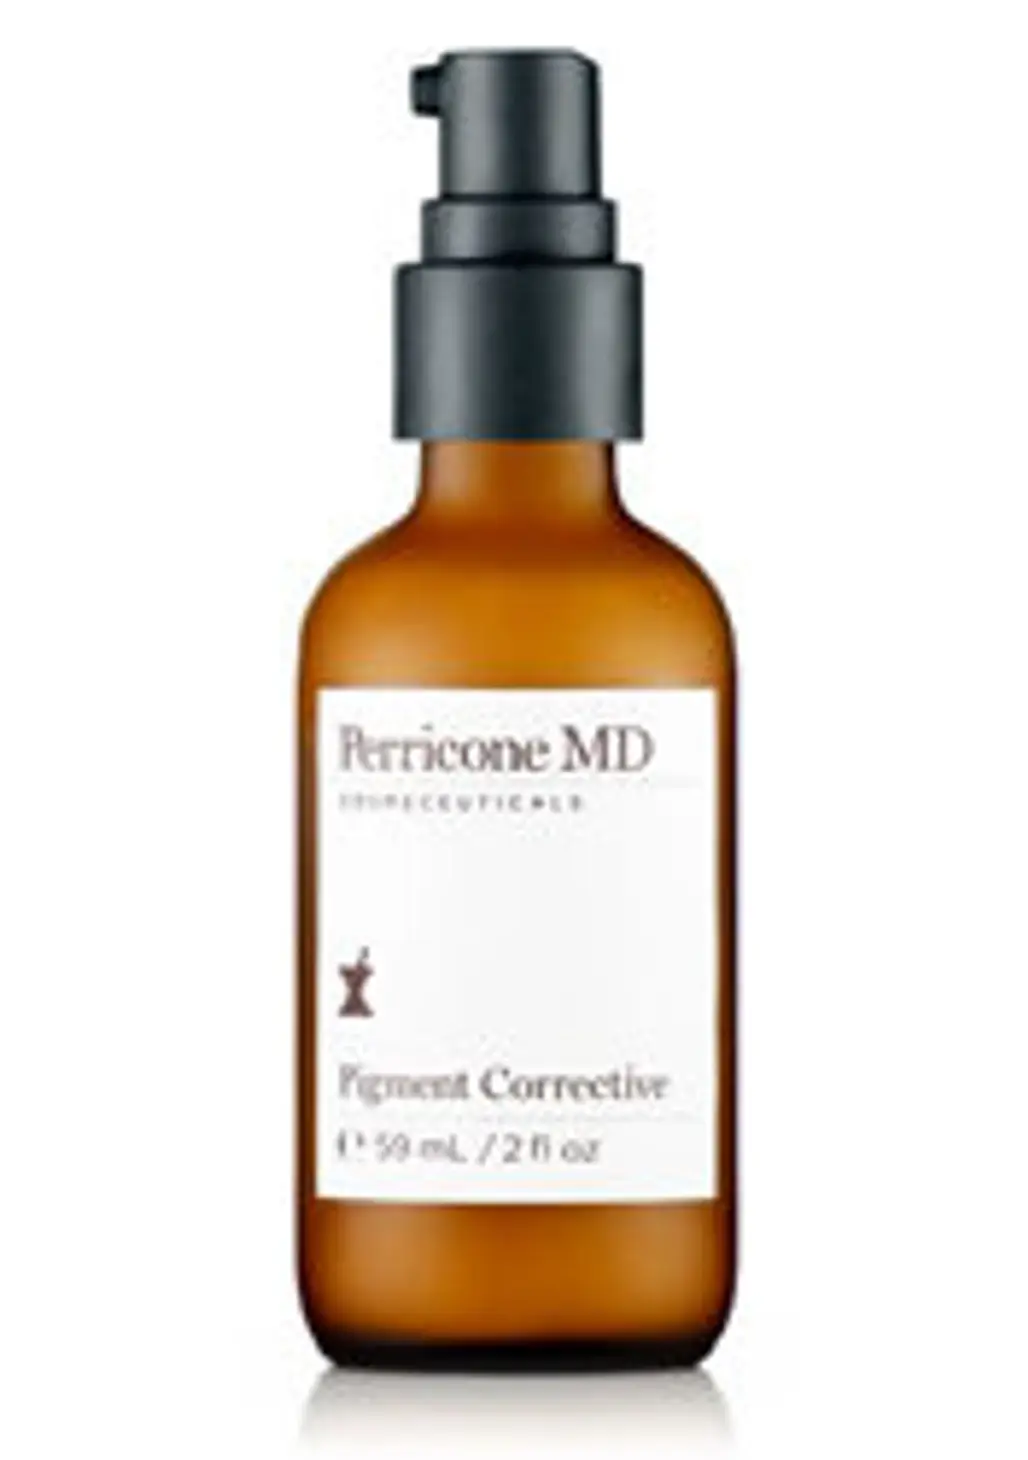 Perricone MD Pigment Corrective